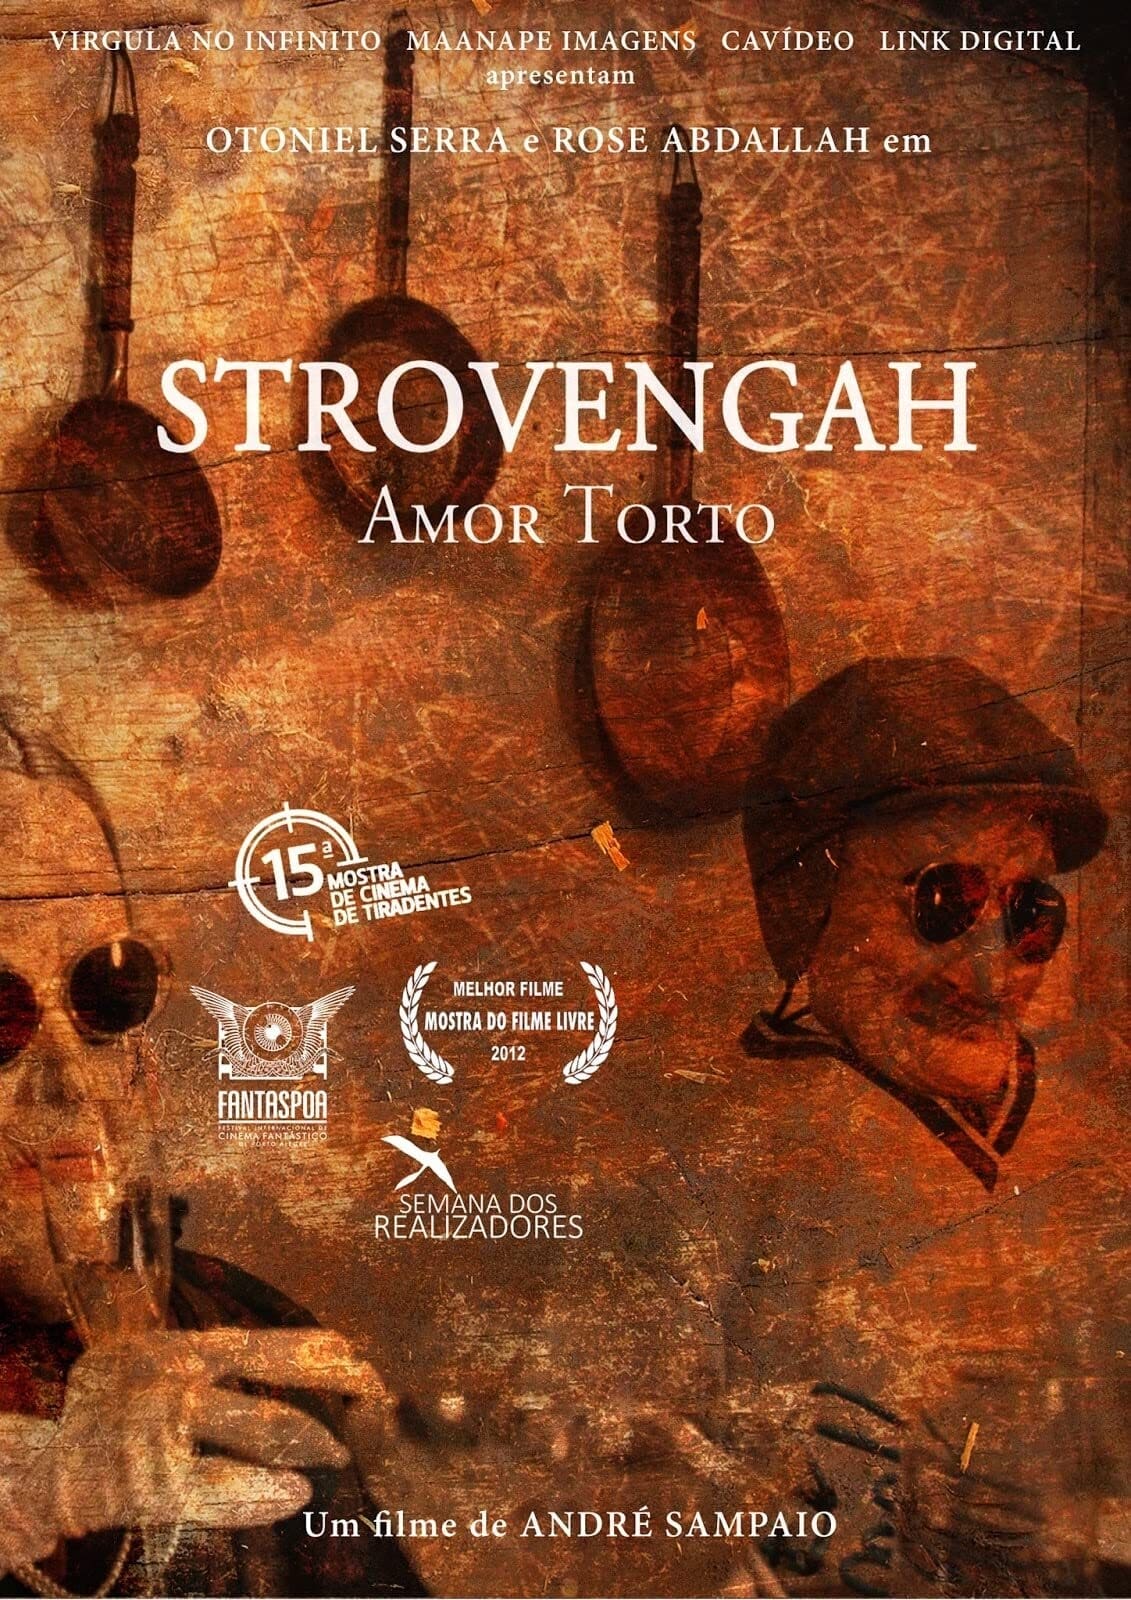 Strovengah: Amor Torto